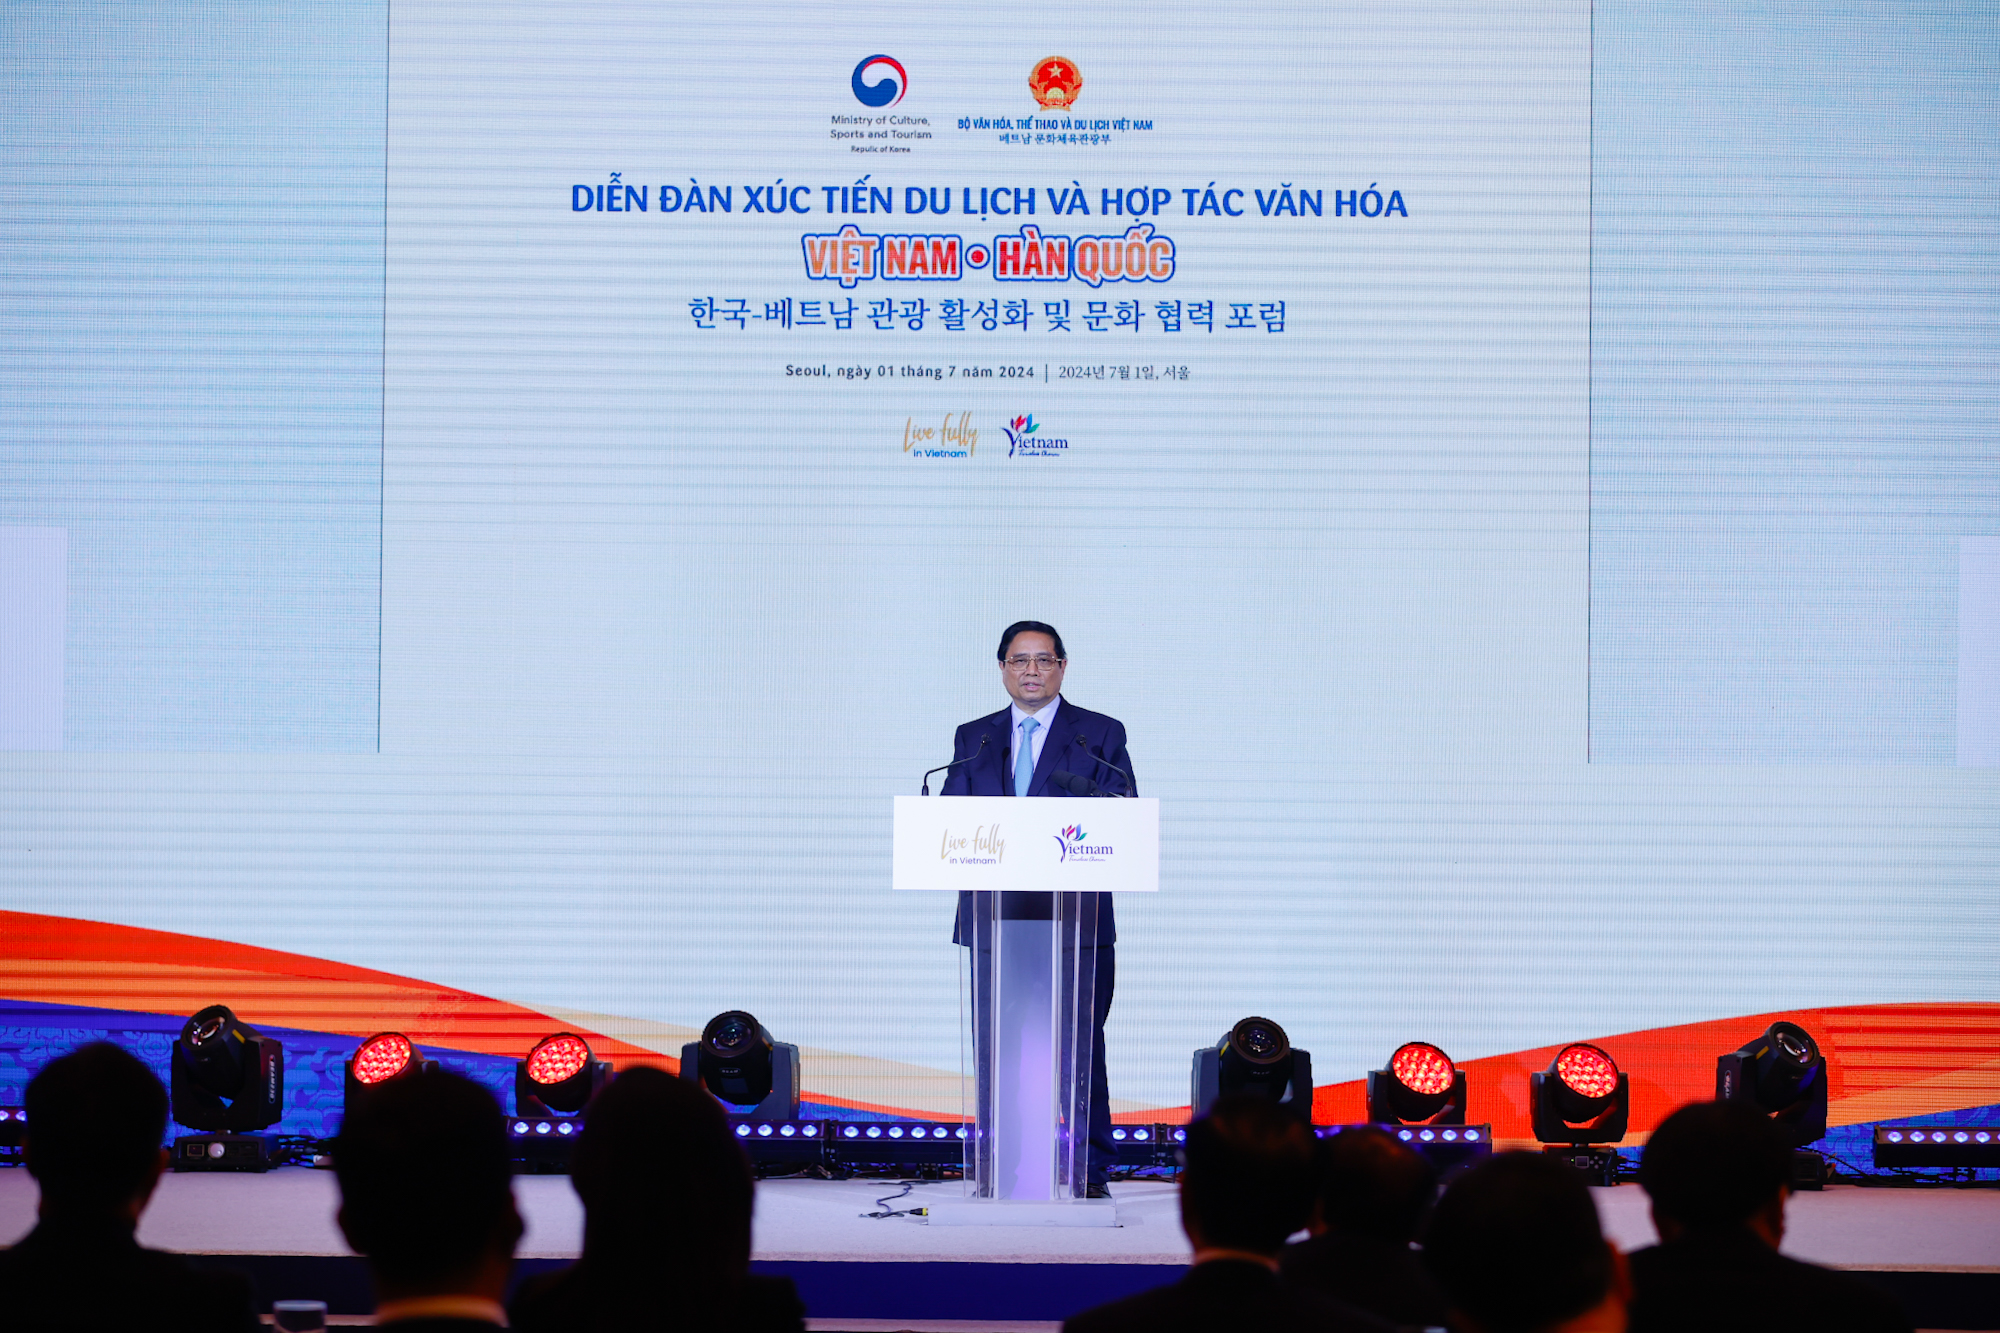 Về lĩnh vực văn hóa, Thủ tướng nhìn nhận quan hệ hợp tác văn hóa Việt Nam-Hàn Quốc không ngừng được vun đắp, phát triển mạnh mẽ trong thời gian qua - Ảnh: VGP/Nhật Bắc